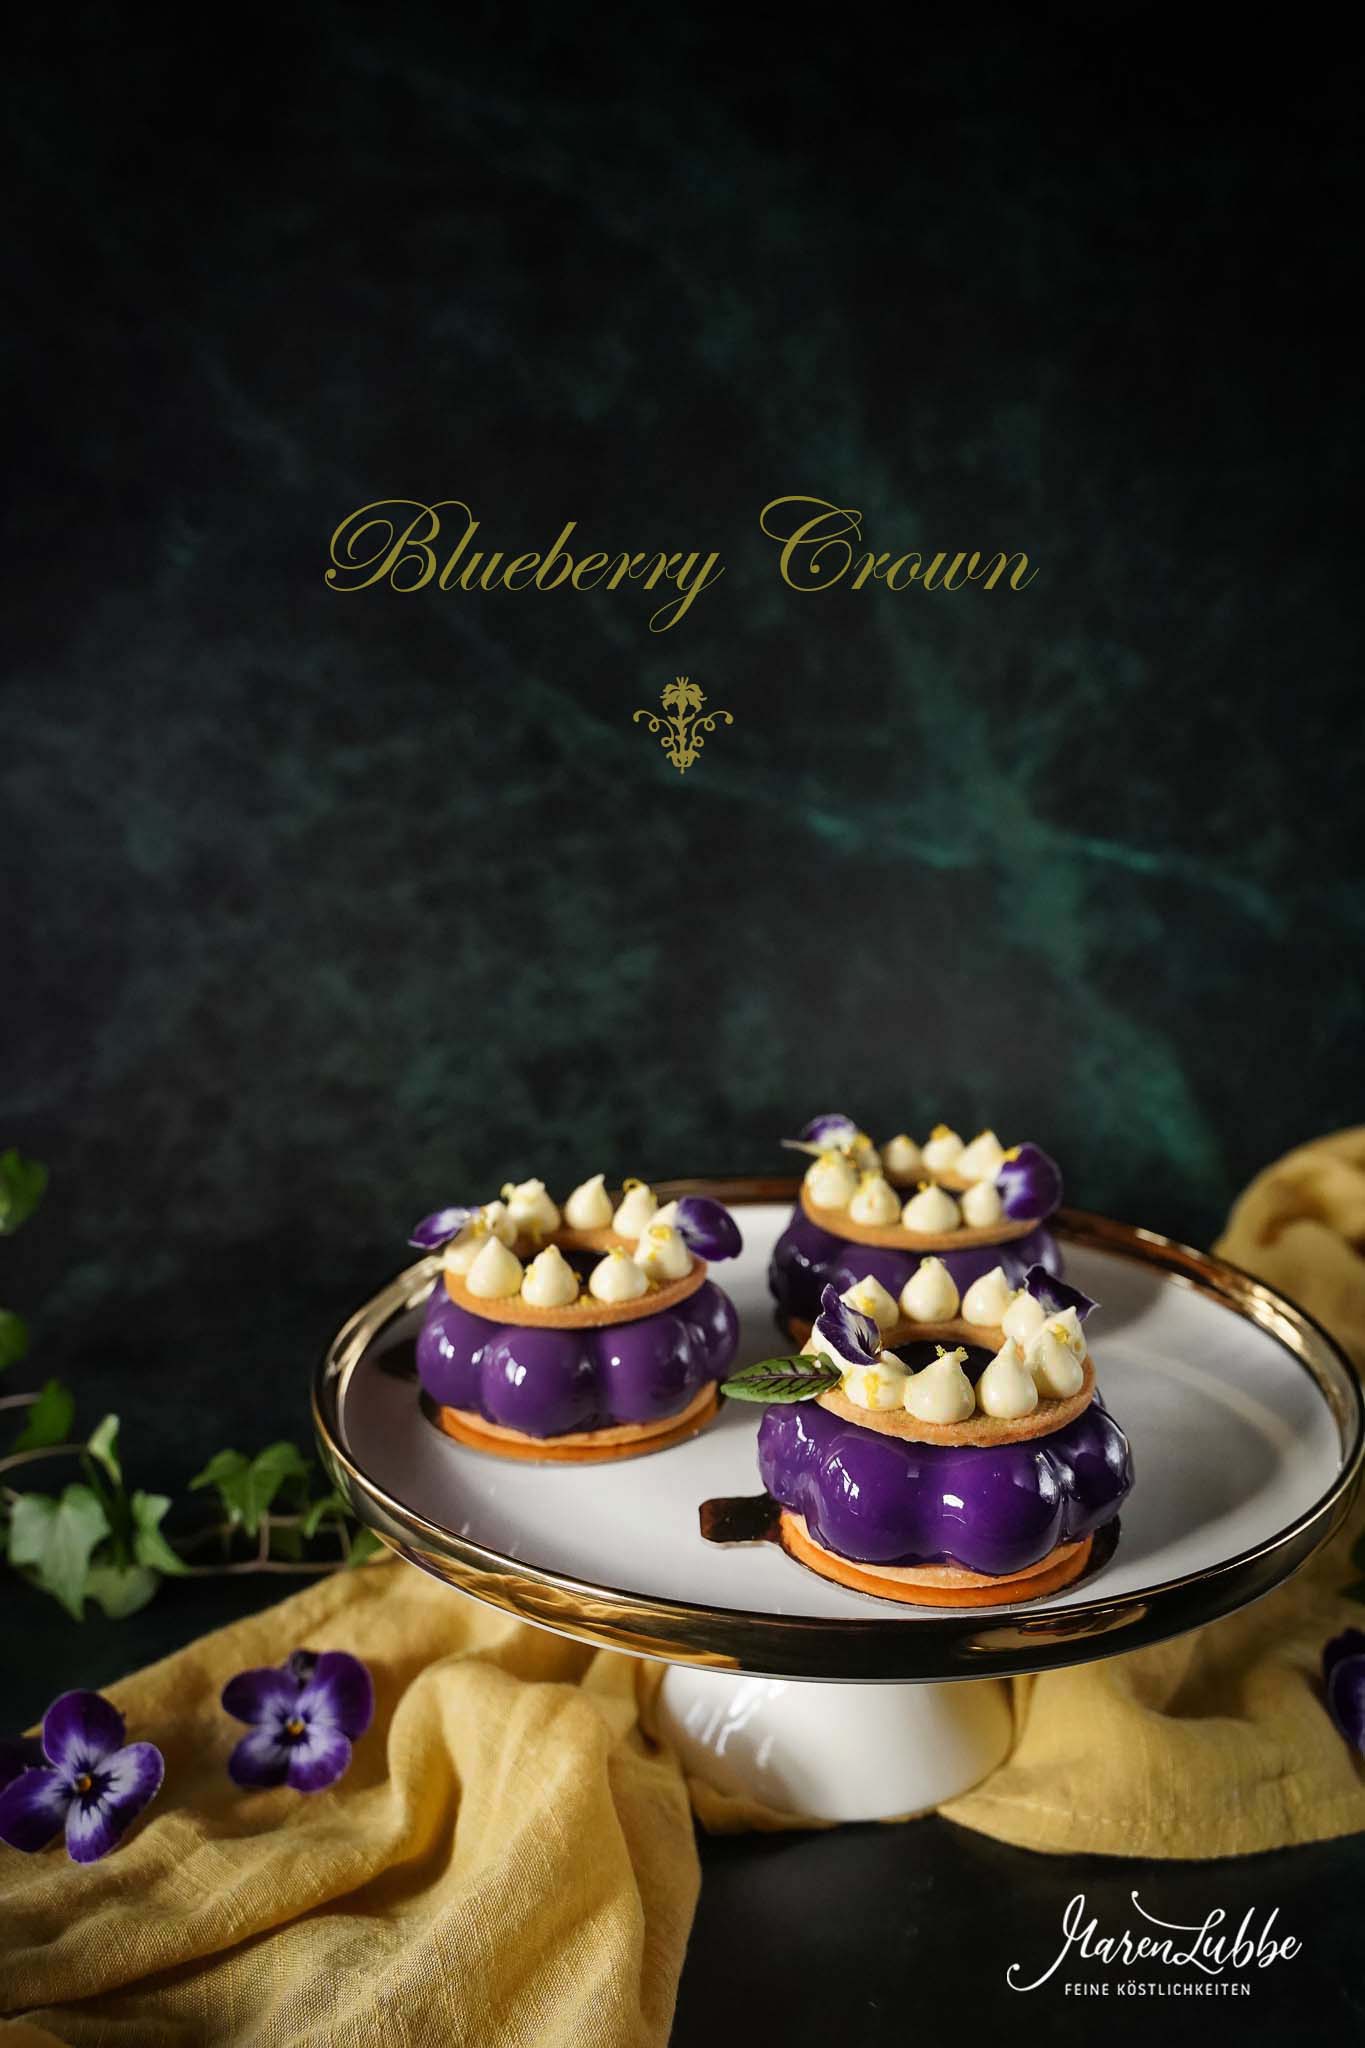 Blueberry Crown Törtchen